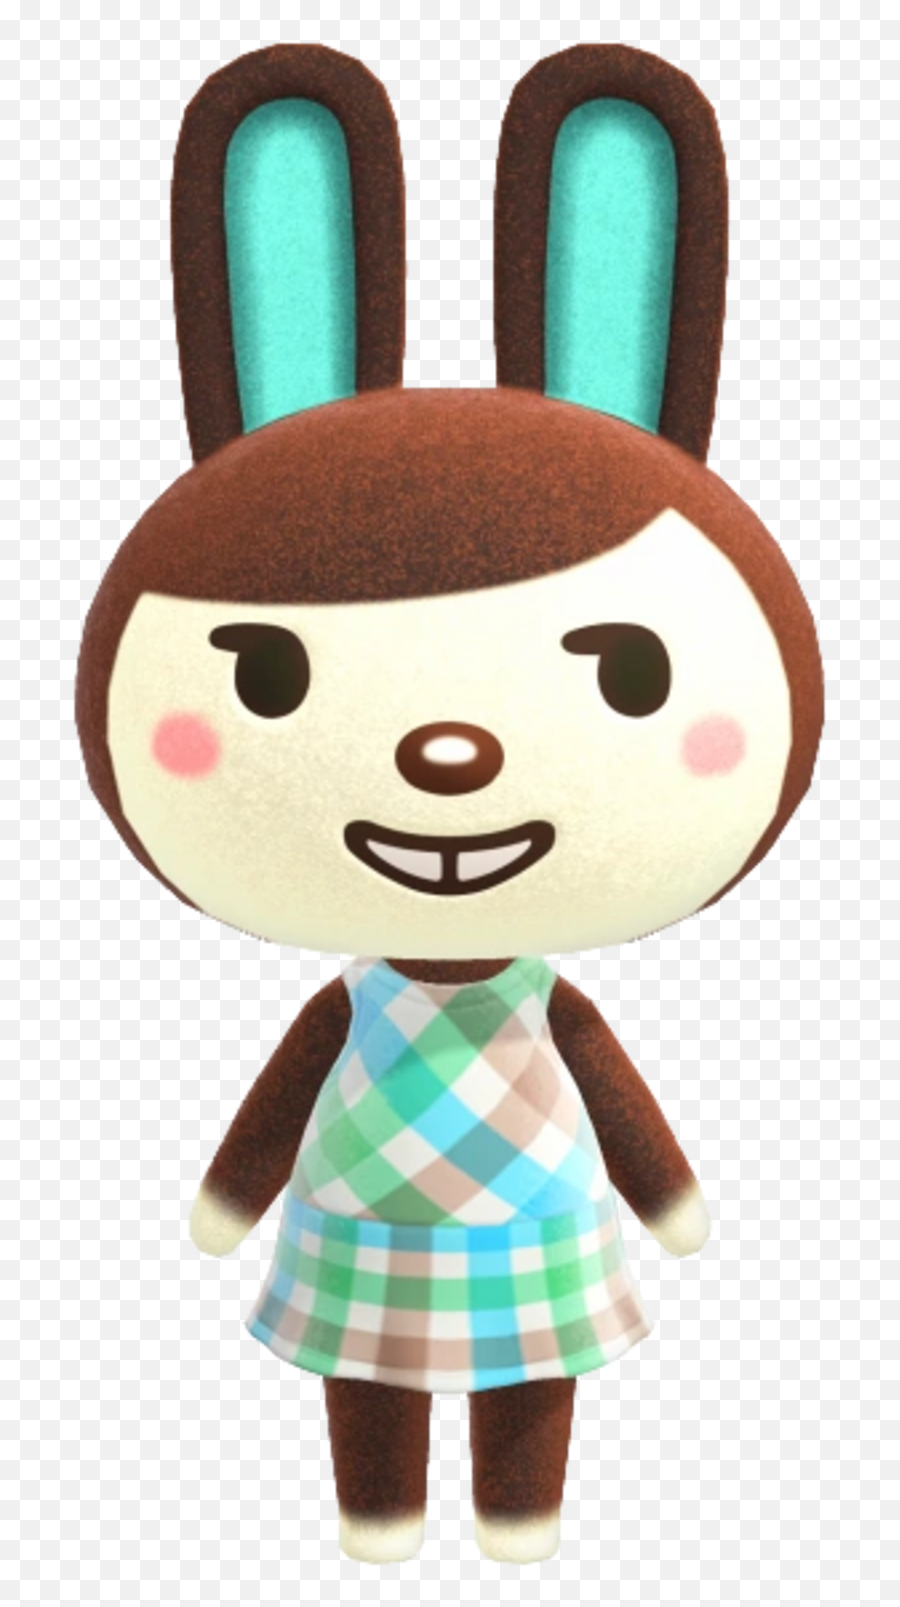 Animal Crossing Wiki - Carmen From Animal Crossing Emoji,Emoticon Rabbit Plush